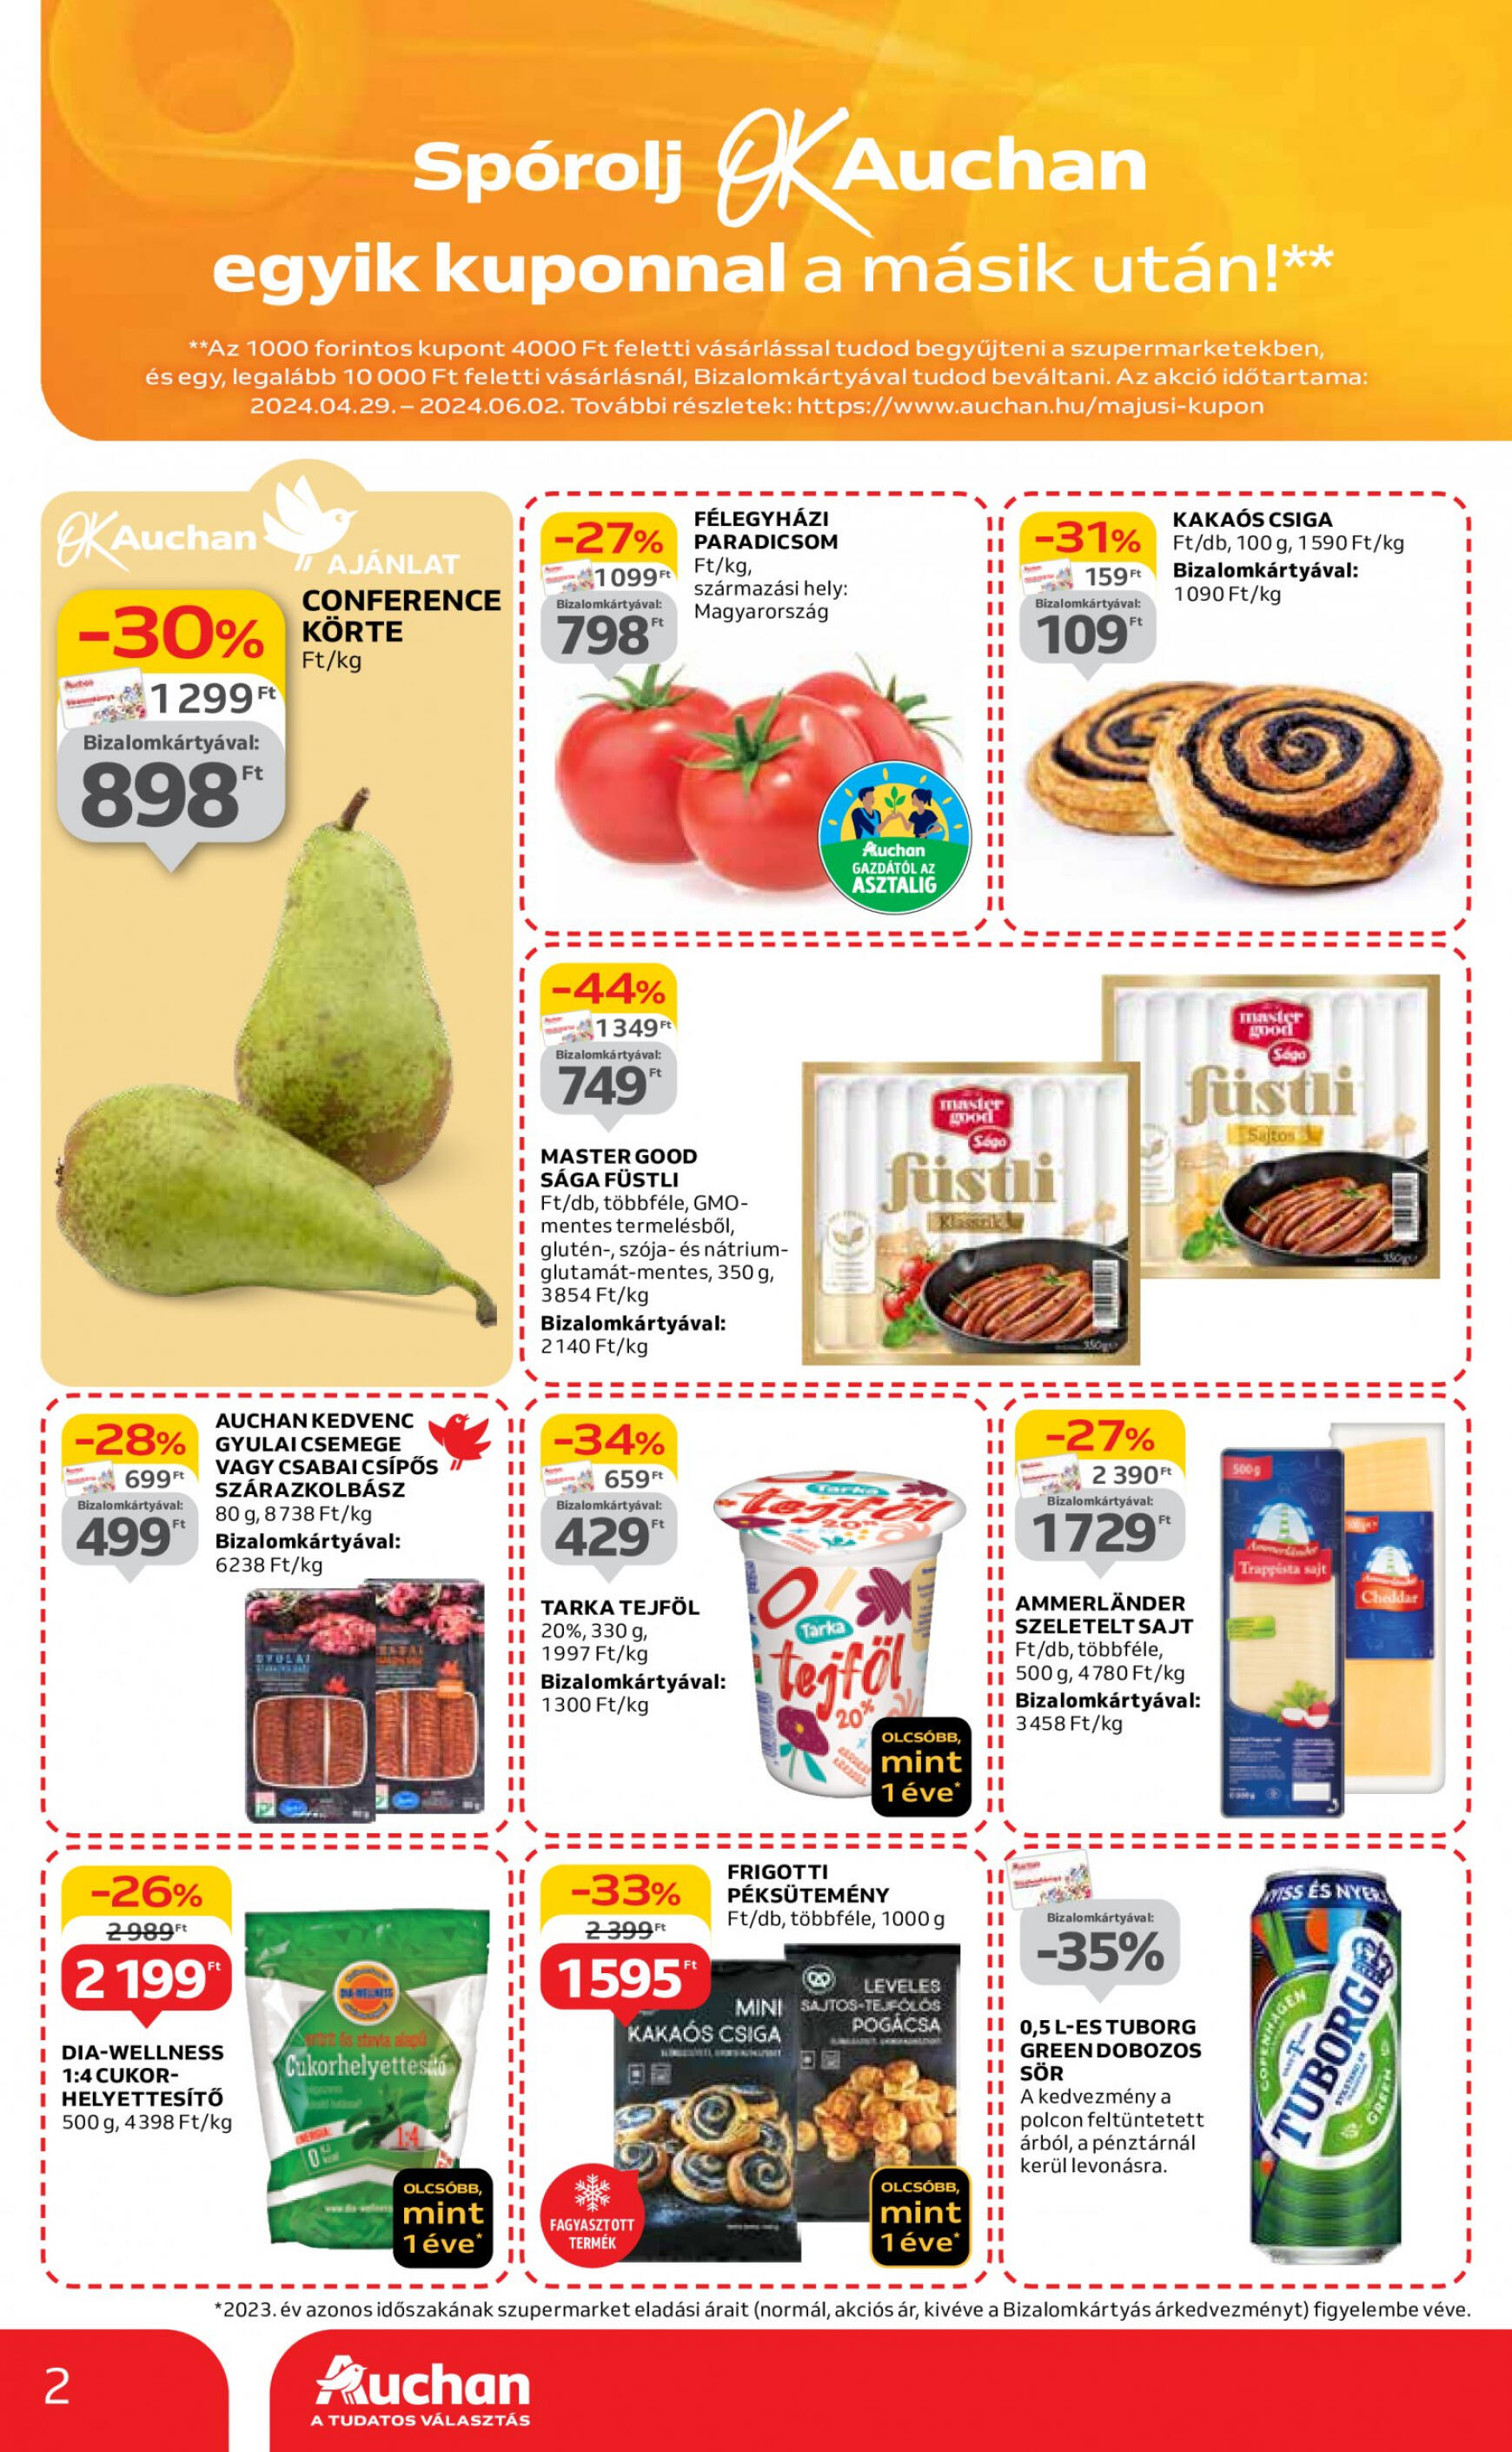 auchan - Aktuális újság Auchan szupermarket 05.02. - 05.08. - page: 2